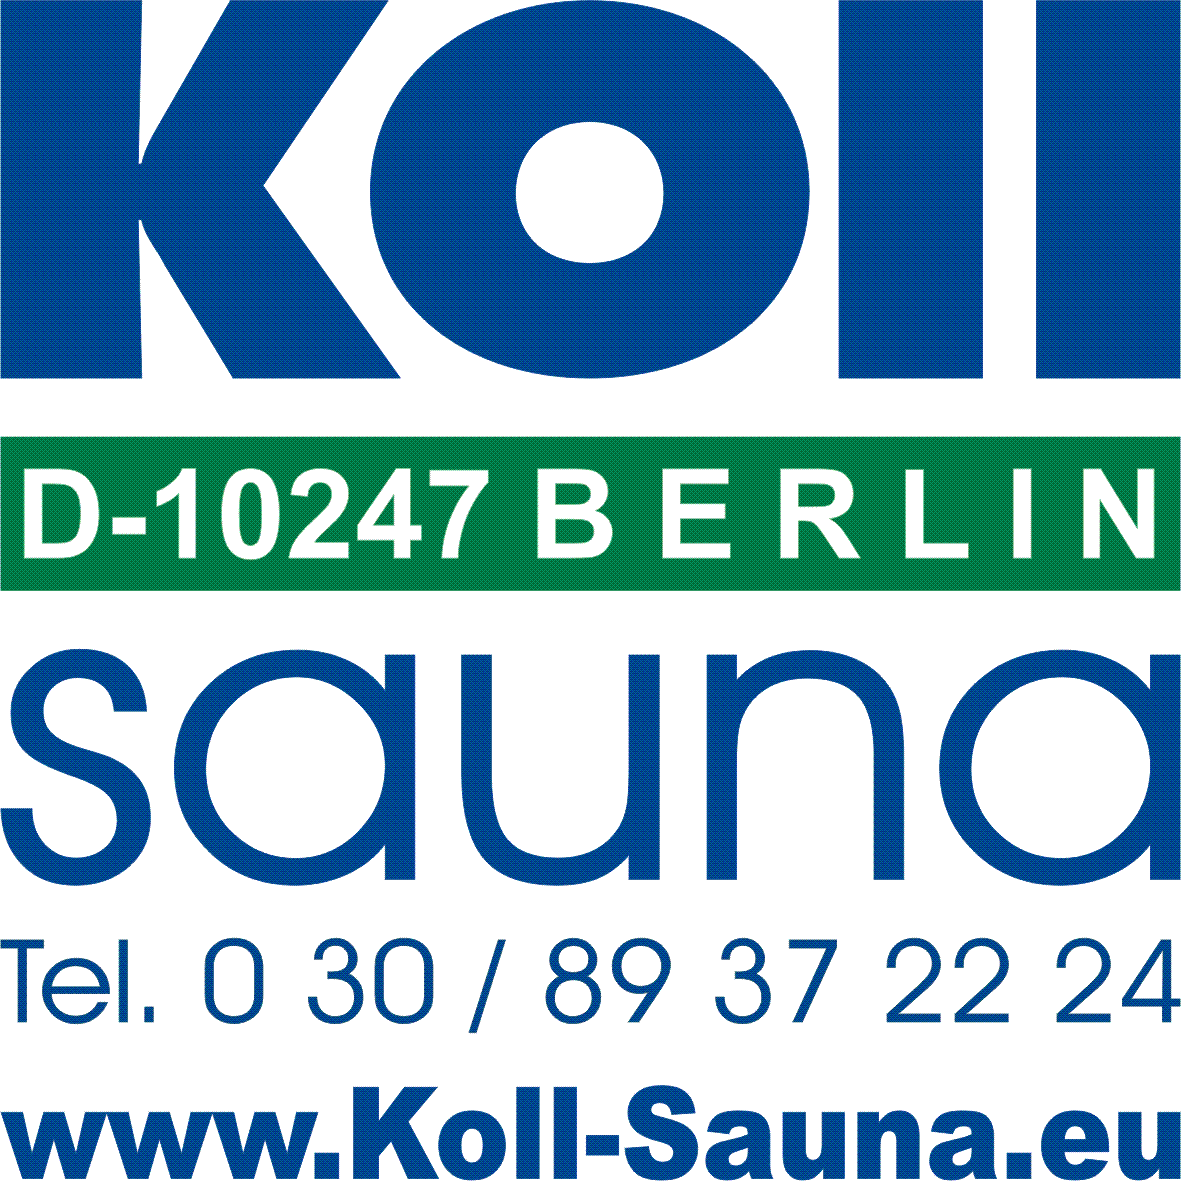 Koll-Saunabau.de in Berlin der Saunahersteller für Berlin, Brandenburg, Sportforum und Bundestag